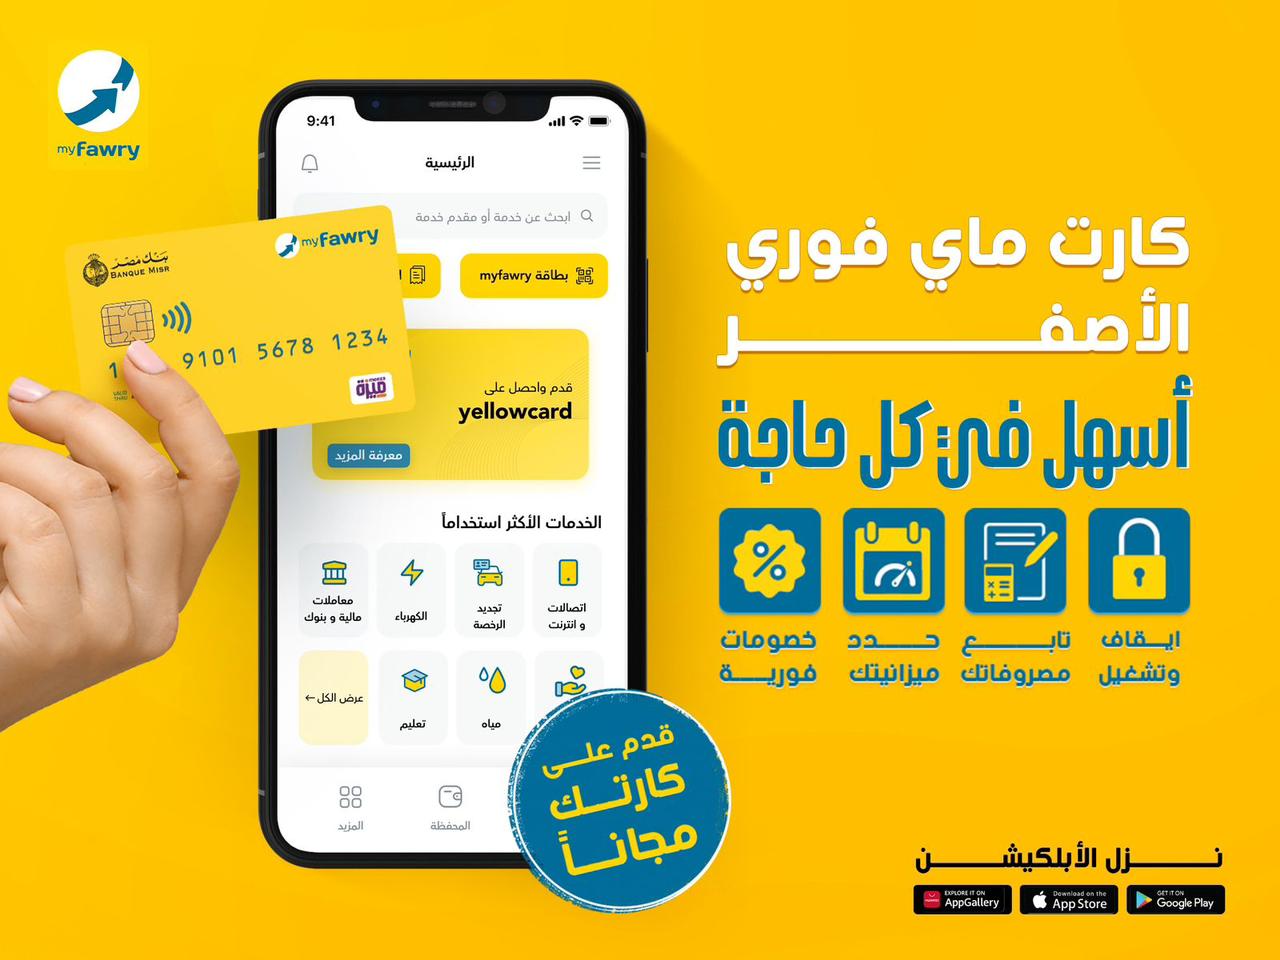 ‎"فوري" توقع شراكة استراتيجية مع بنك مصر  وشركة بنوك مصر لإصدار  myfawry “yellowcard”